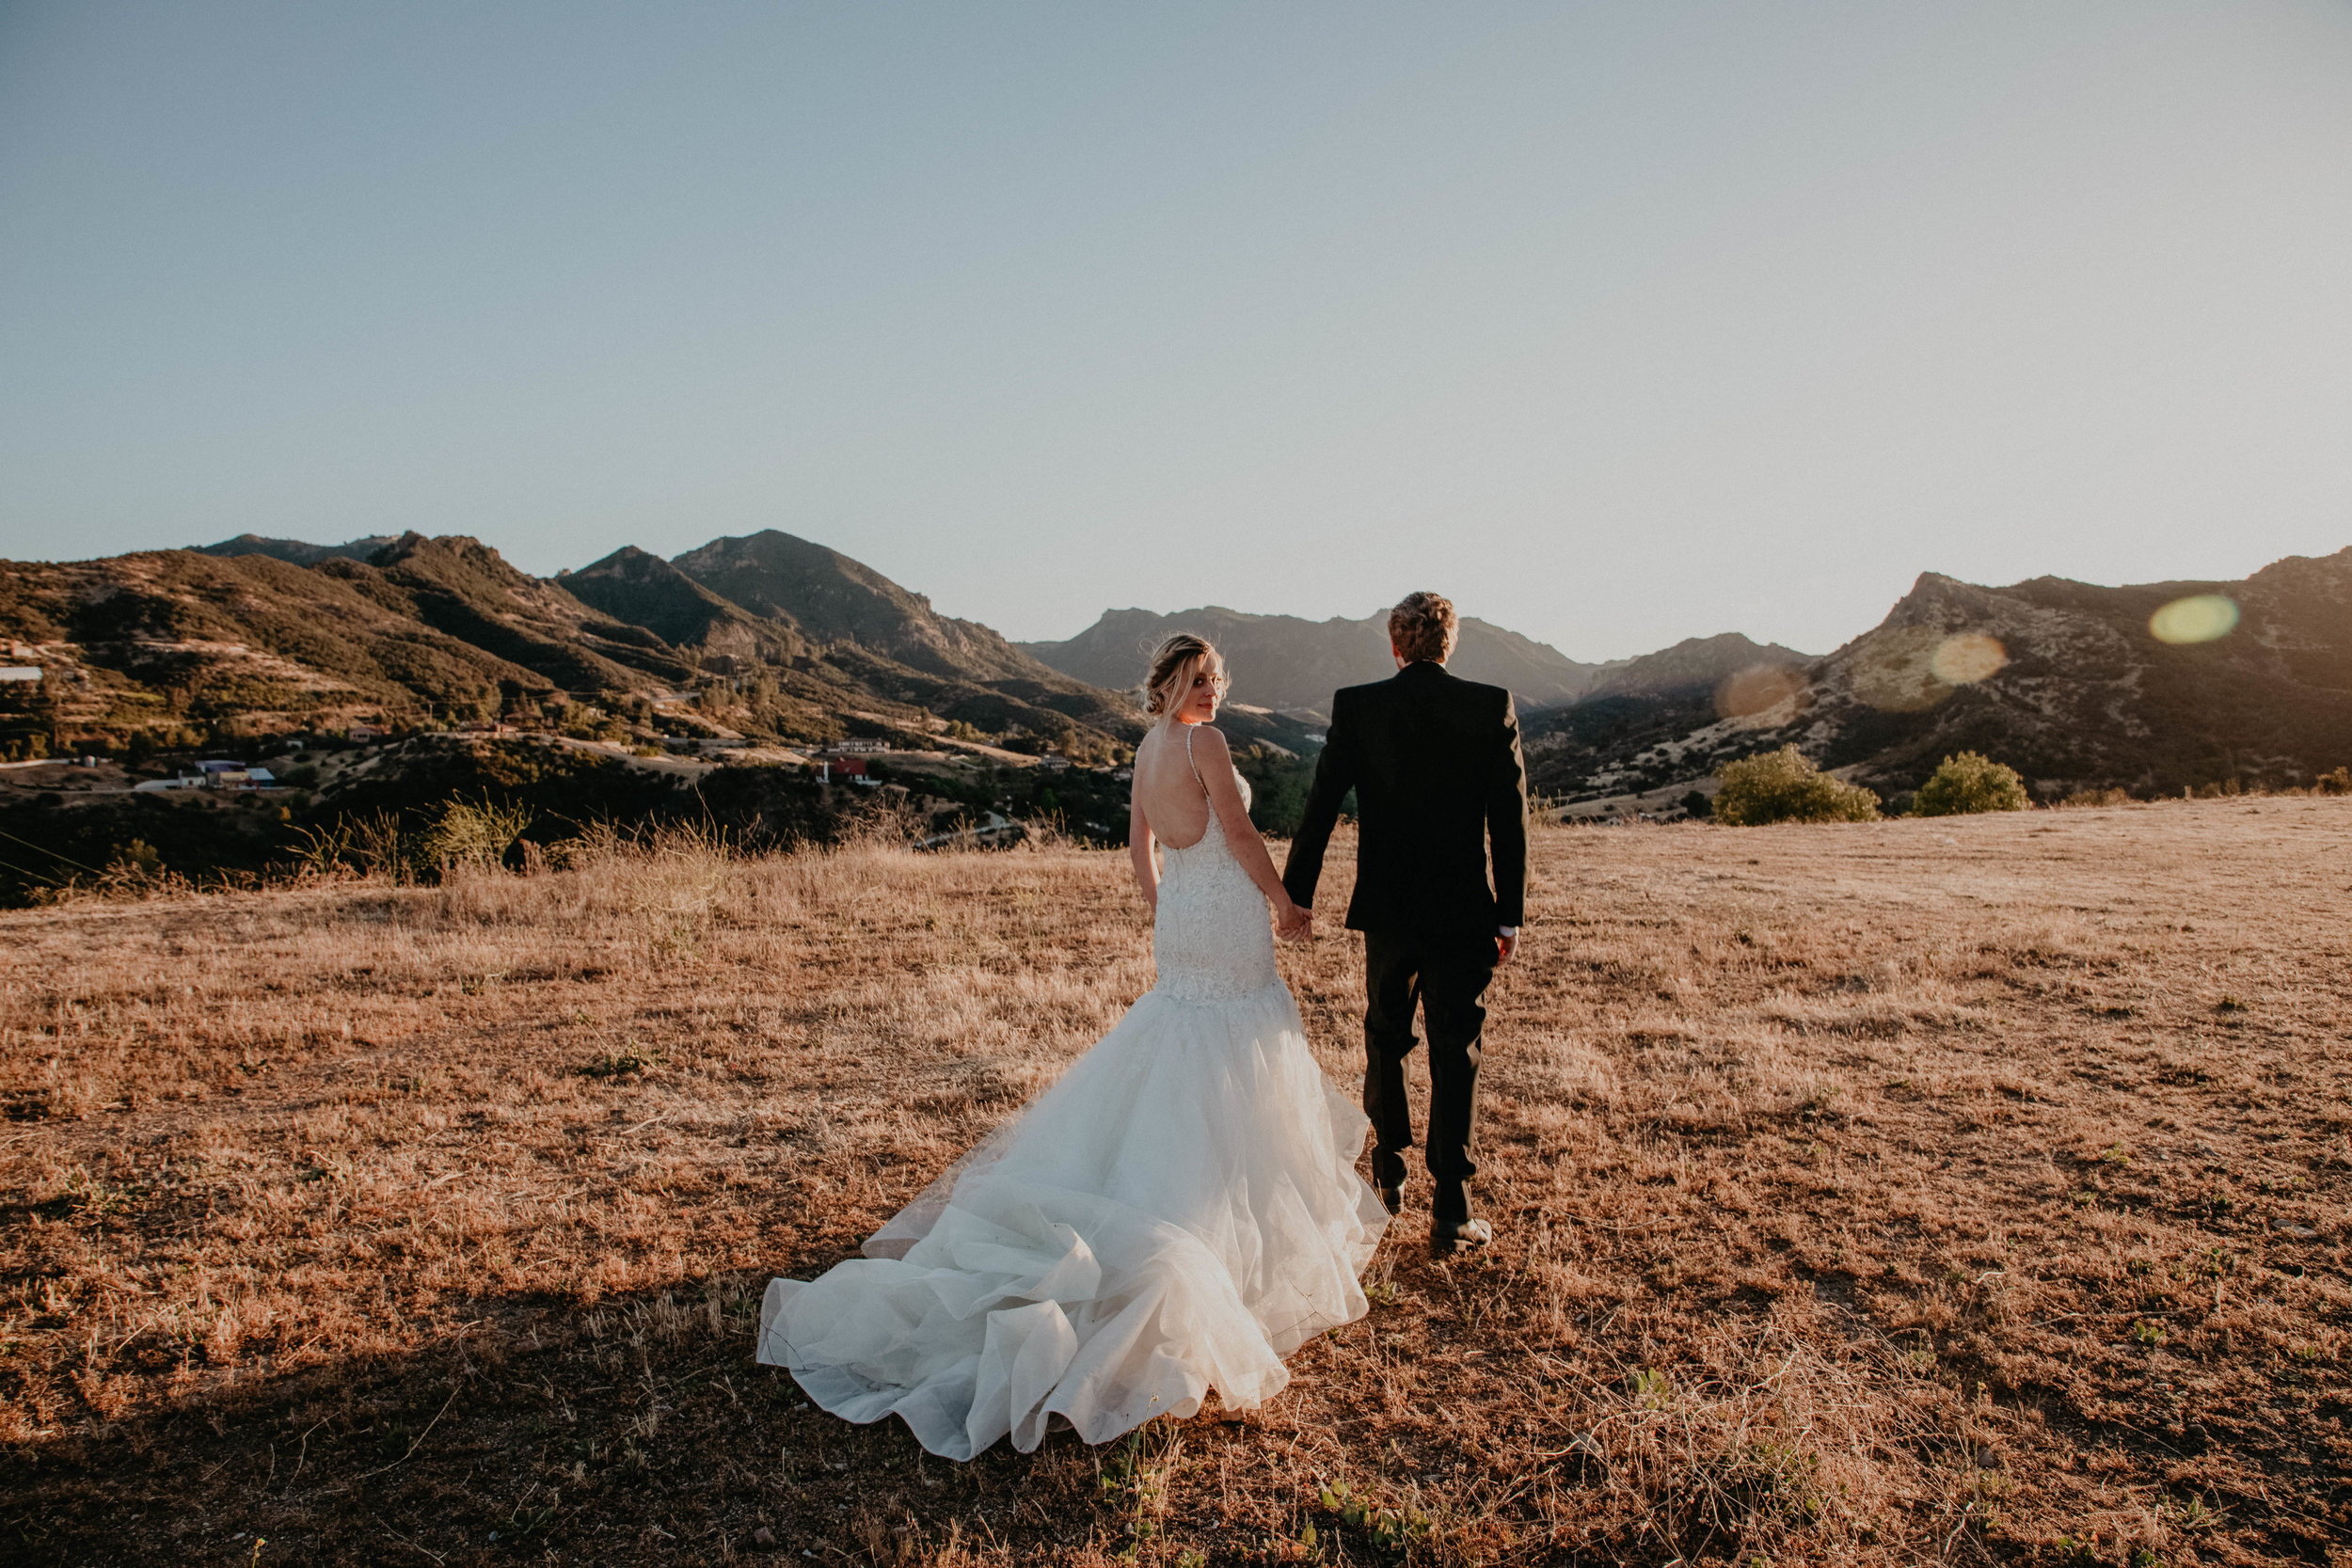 A wedding in the Santa Monica Mountains